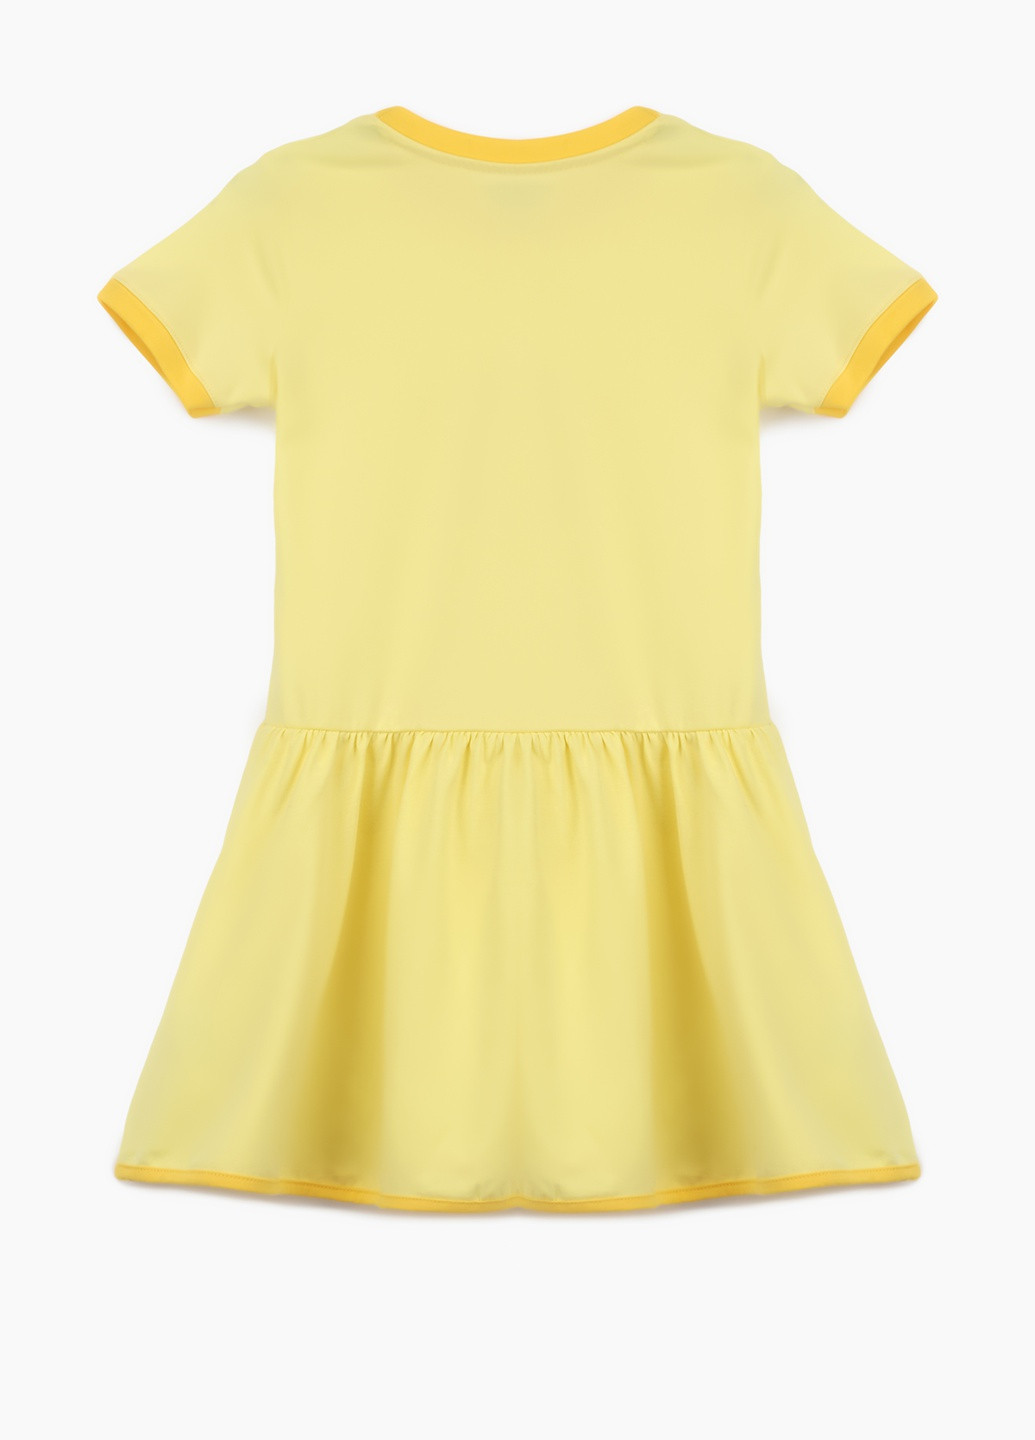 Жовта сукня Toontoy (258360105)